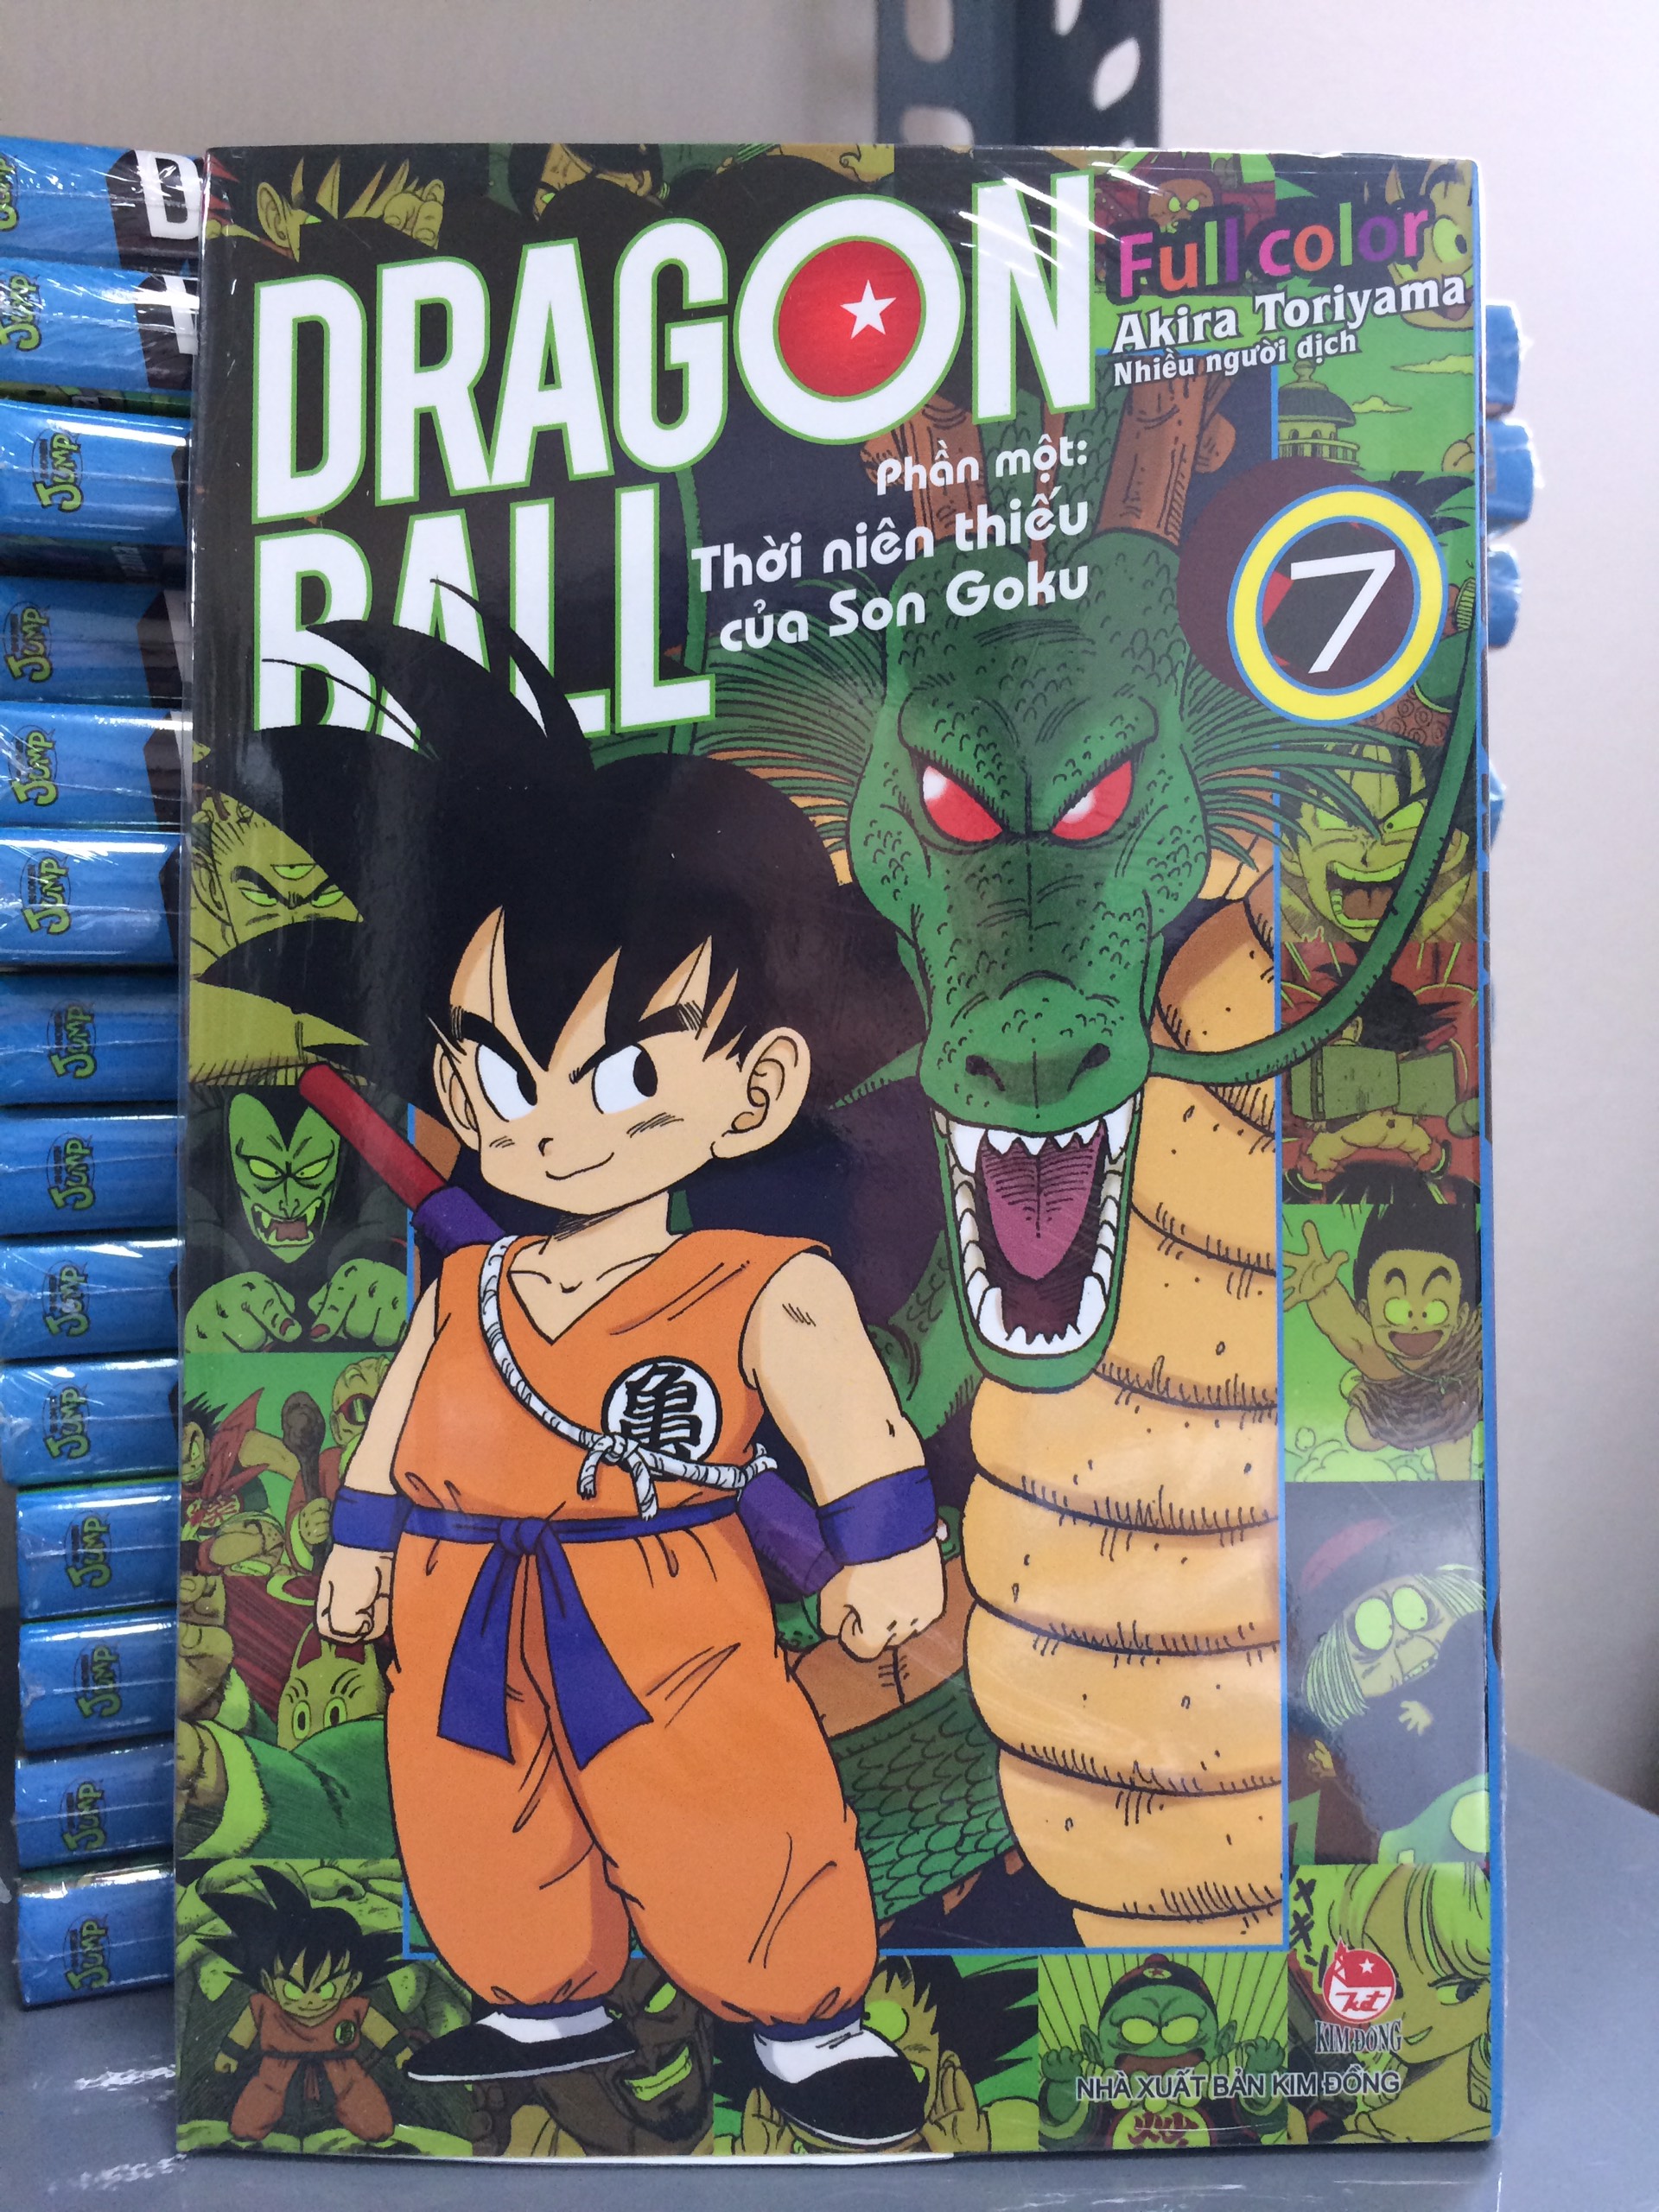 Dragon Ball Full Color - Phần một: Thời niên thiếu của Son Goku - Tập 7